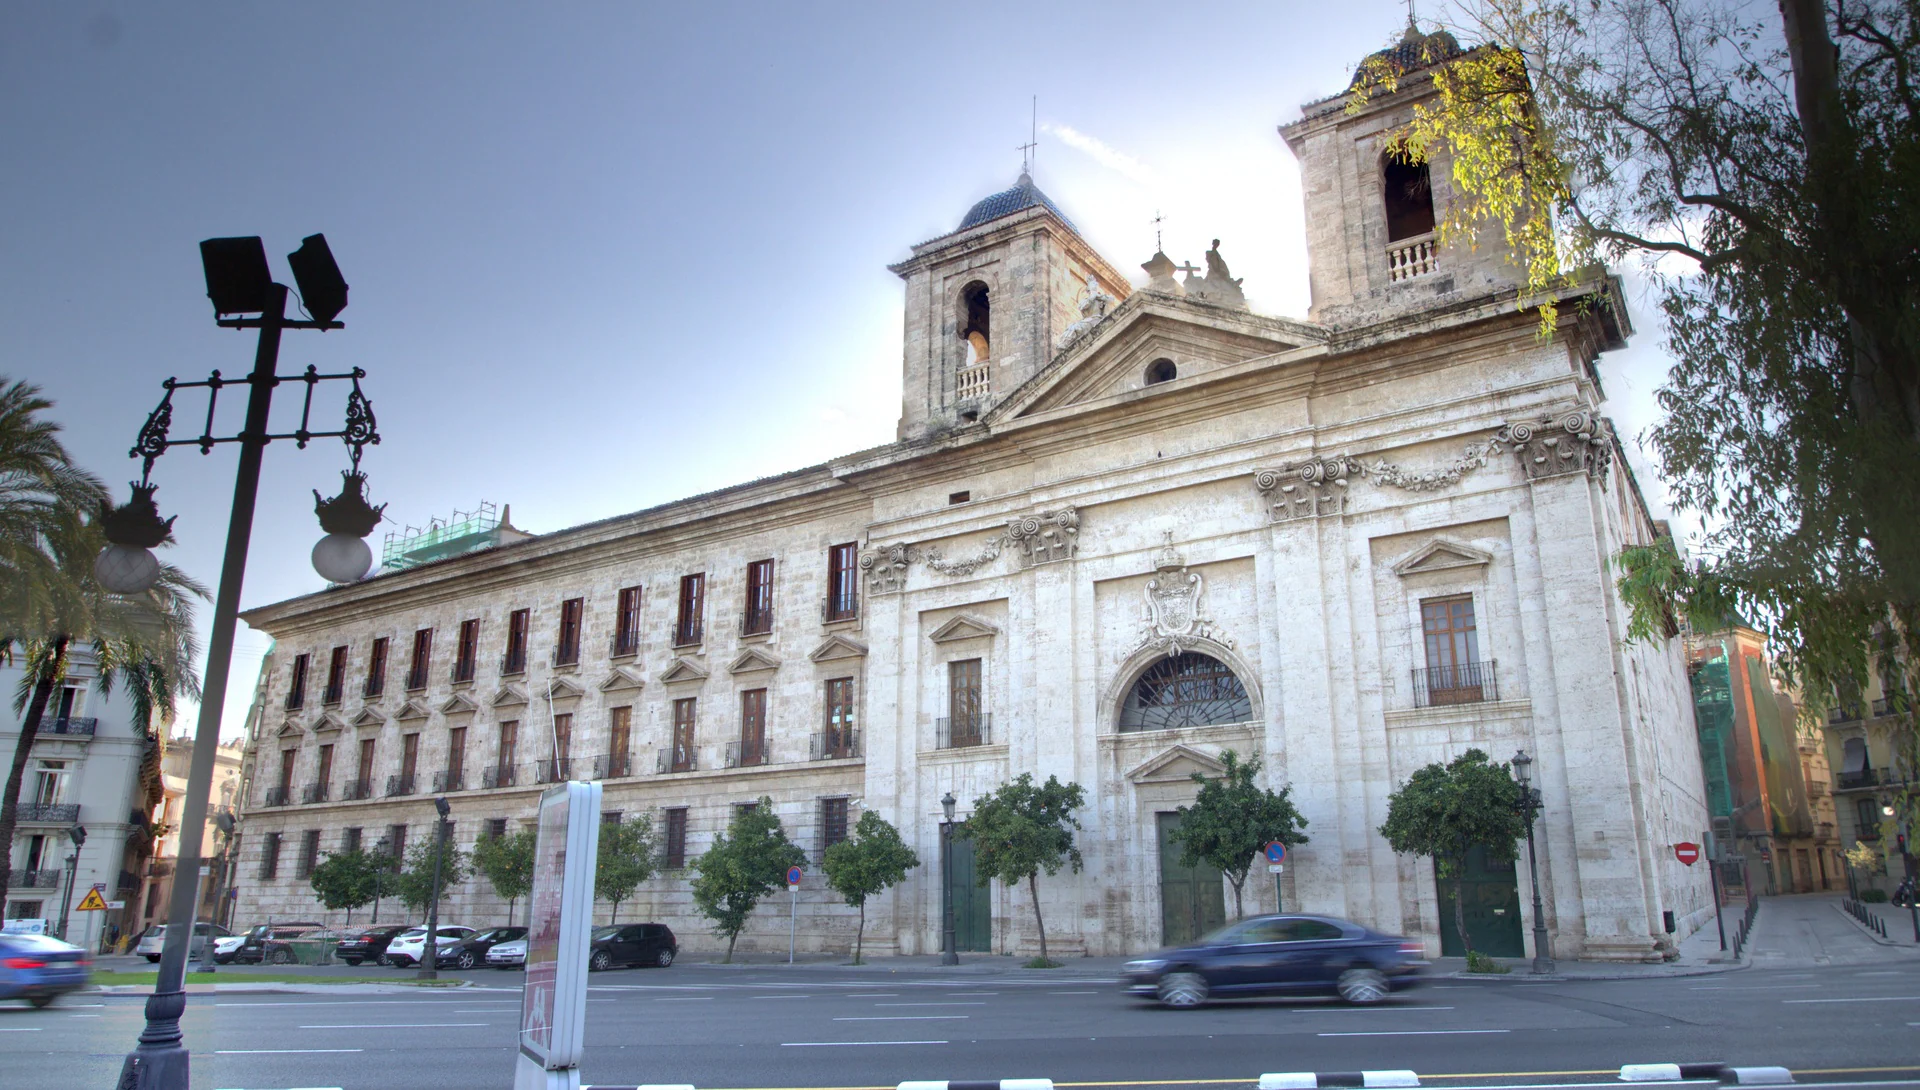 Palau del Temple, en Valencia, junto a la plaza Tetuán. Es un conjunto formado por el convento, colegio e iglesia de la Orden de Montesa, conocido popularmente como el Temple por haber pertenecido antes a la Orden Templaria